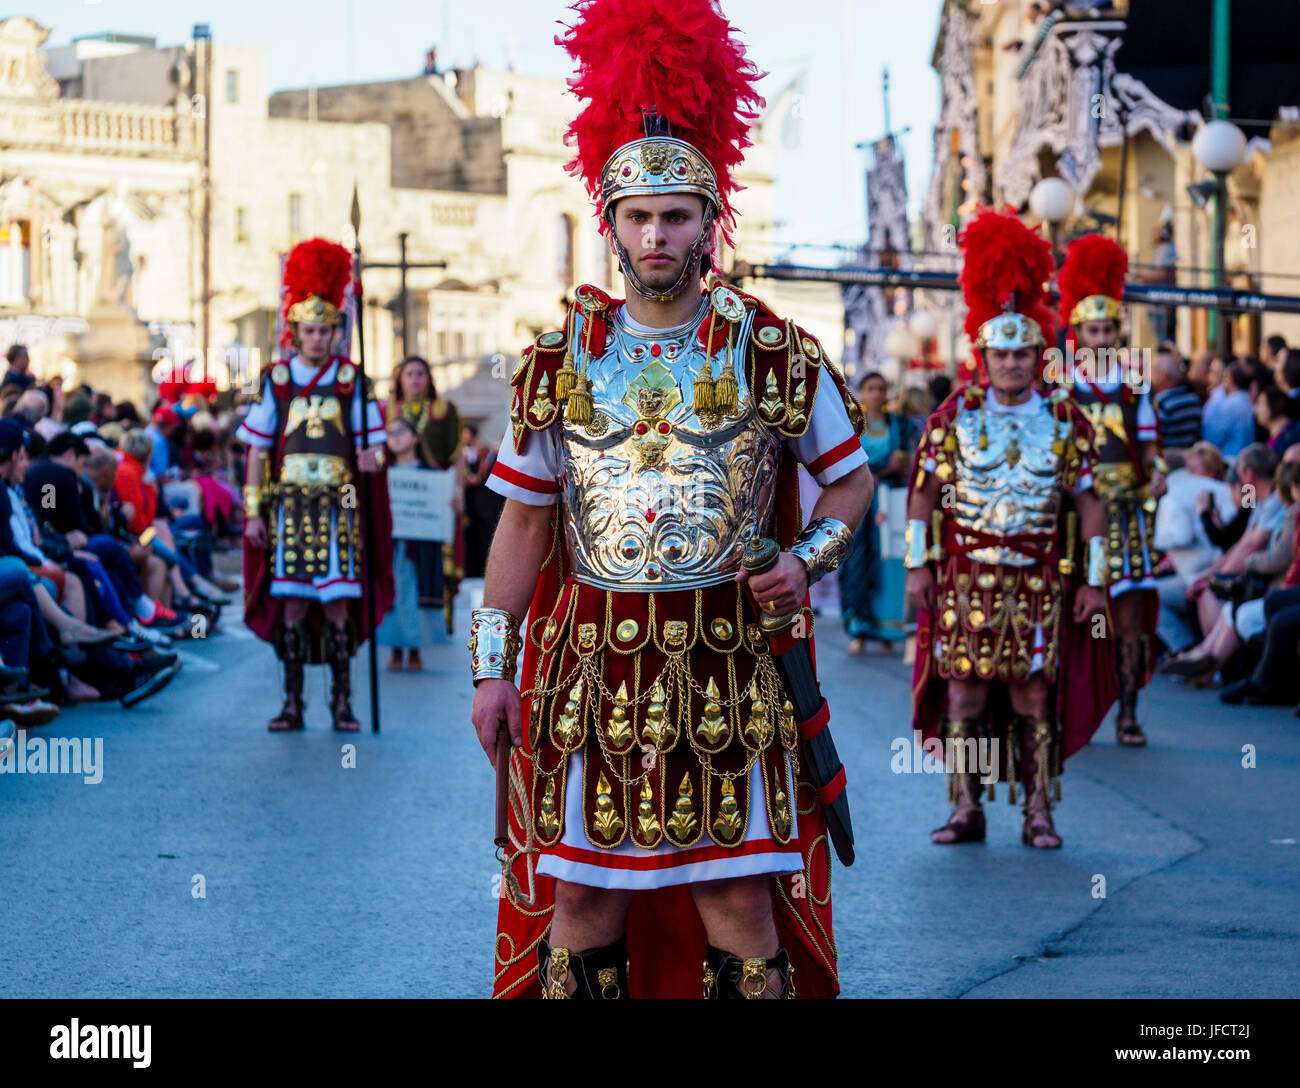 Abitanti di Zejtun / Malta aveva loro tradizionale processione del Venerdì santo di fronte alla loro chiesa, alcuni di loro vestiti come legionari romani Foto Stock